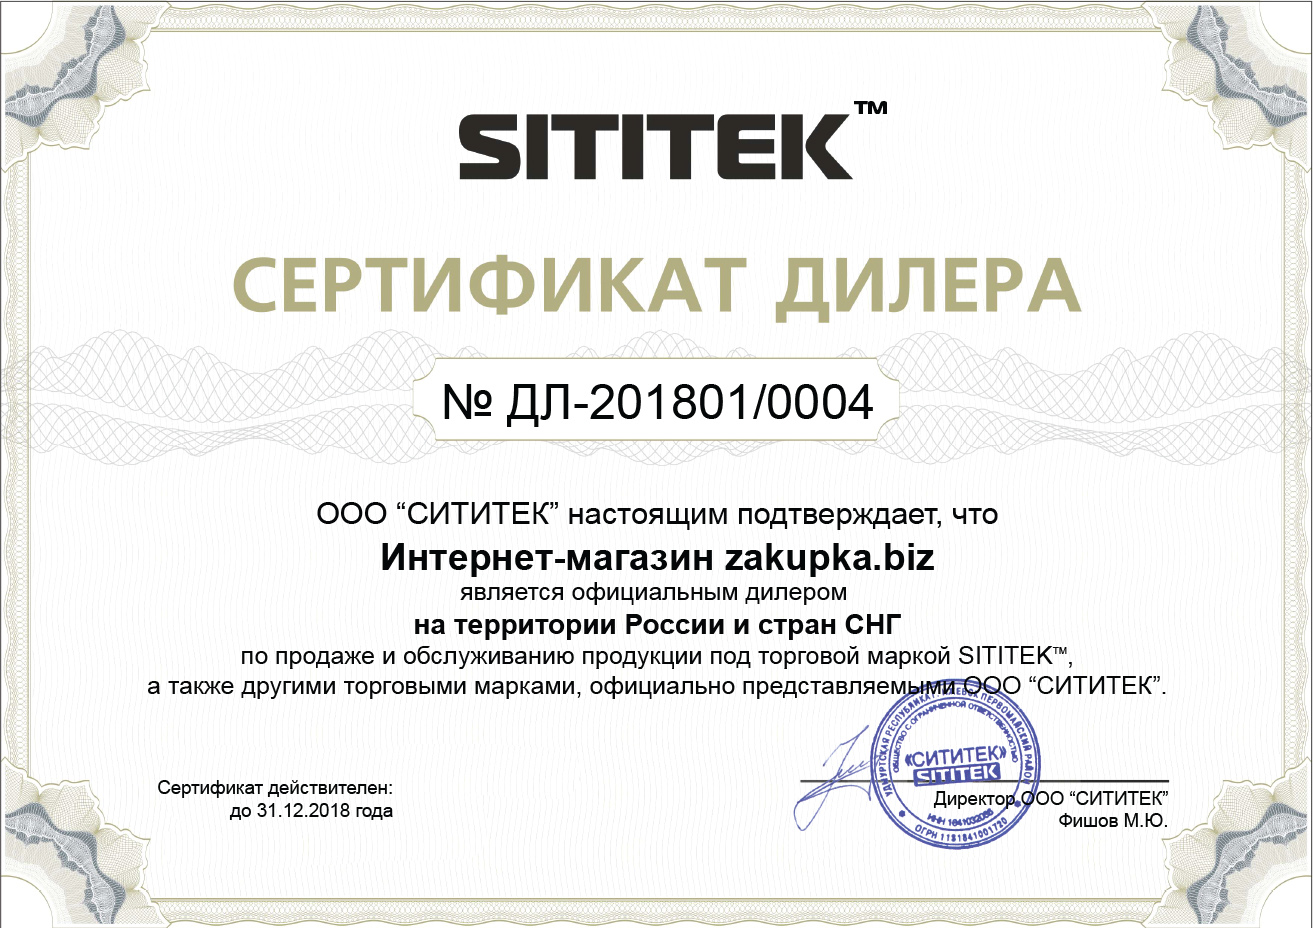 Официальный сертификат дилера, подтверждающий право на продажу и техобслуживание товаров, выпущенных под брендом "Sititek" (нажмите на фото для увеличения)